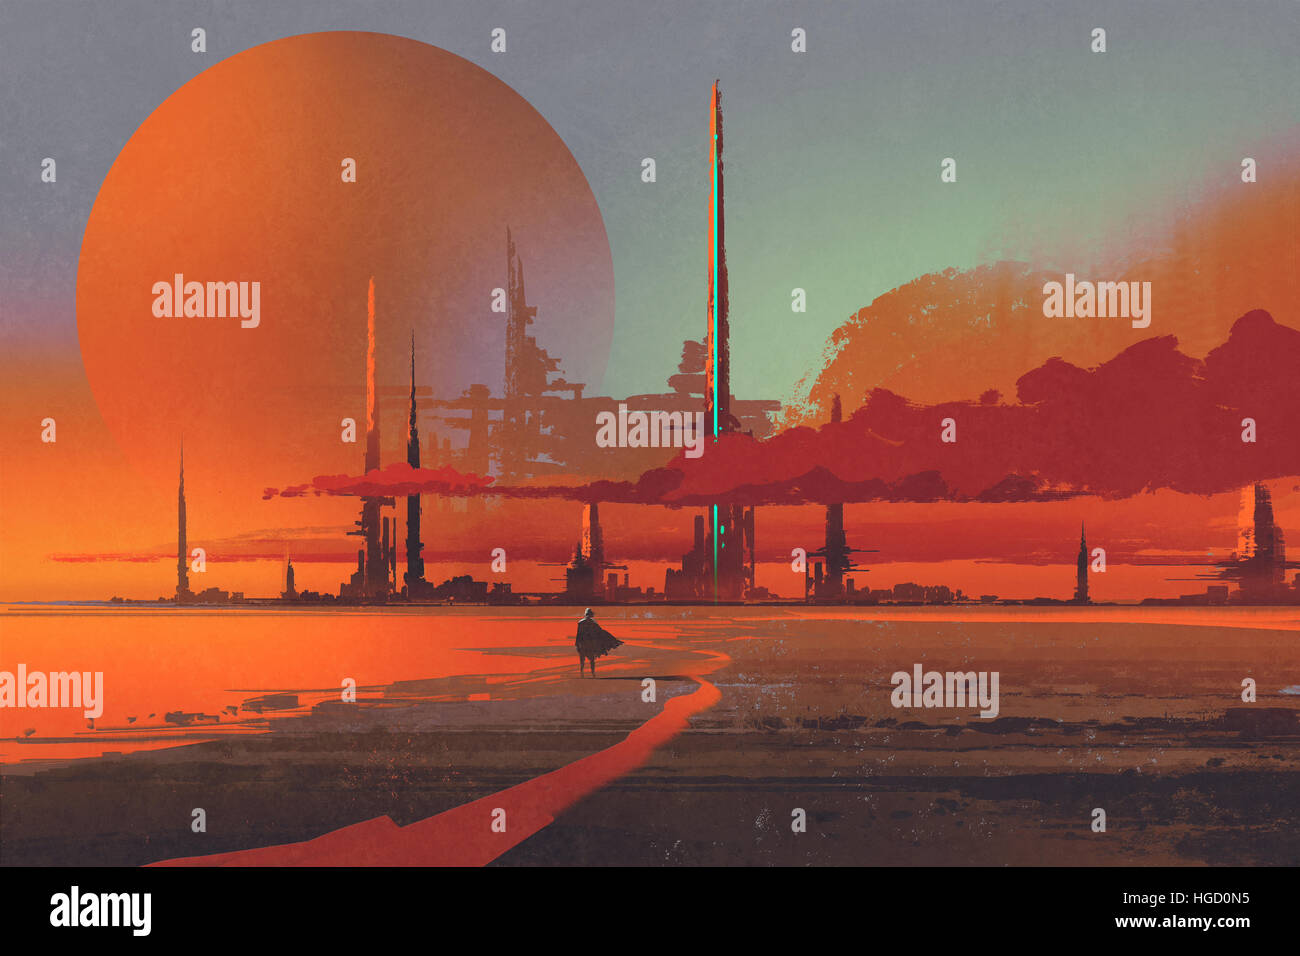 La construction sci-fi dans le désert,illustration peinture numérique Banque D'Images